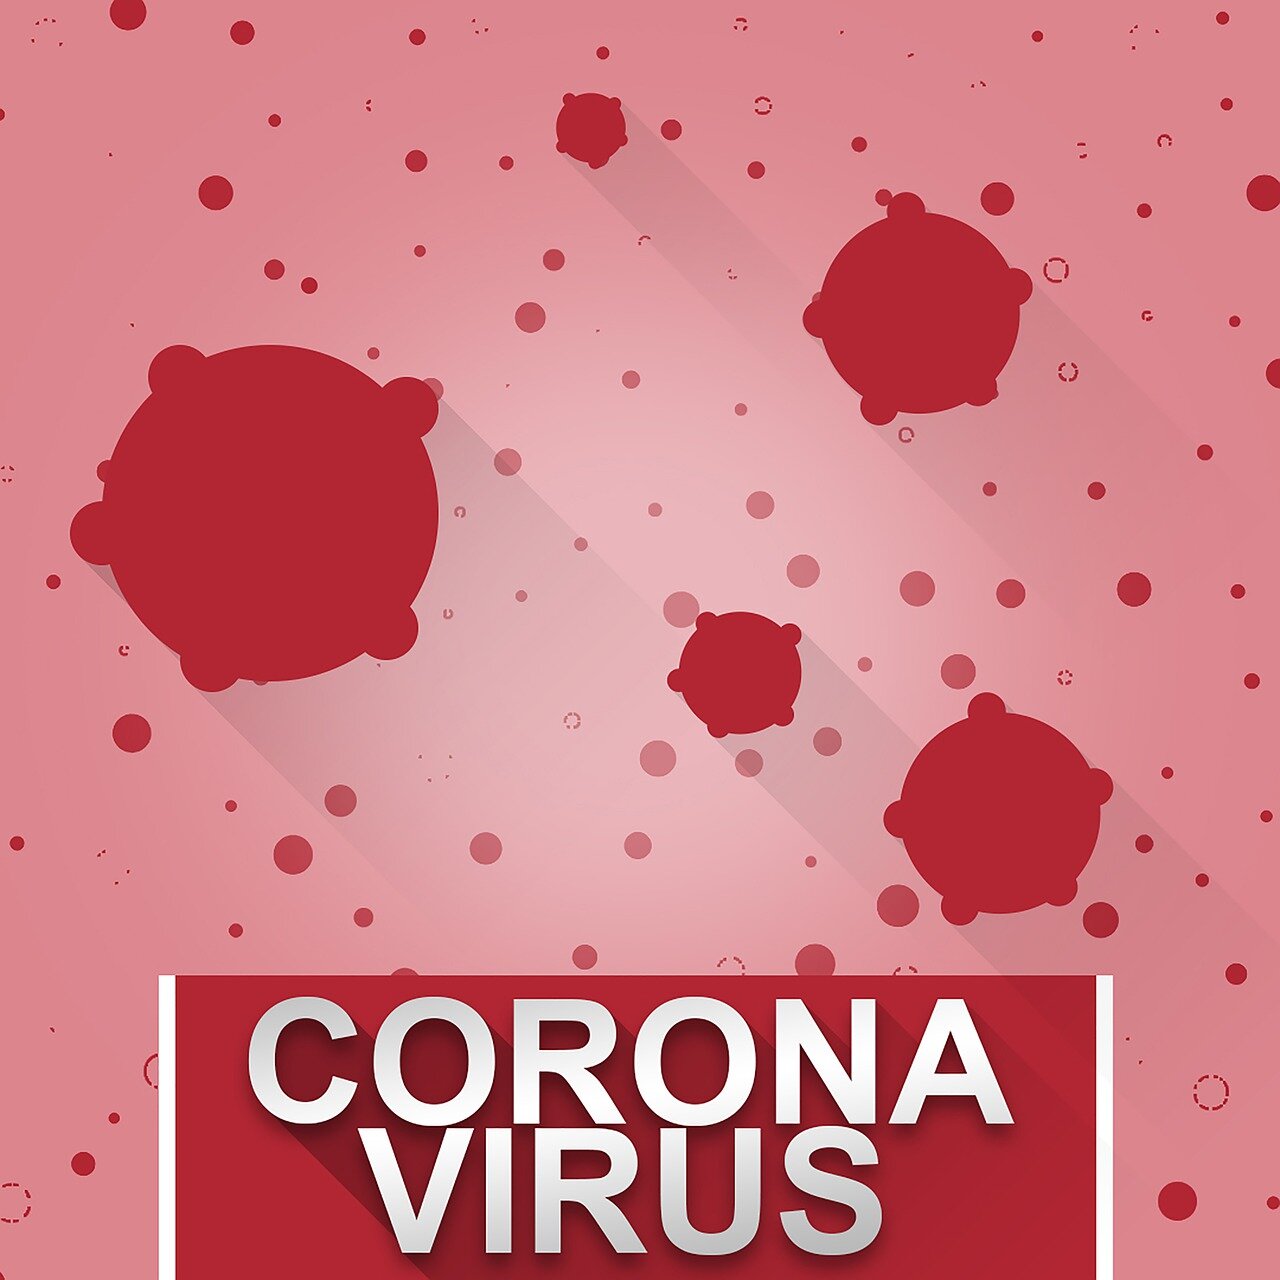 170 235 случаев заражения коронавирусной инфекцией выявлено в регионе 